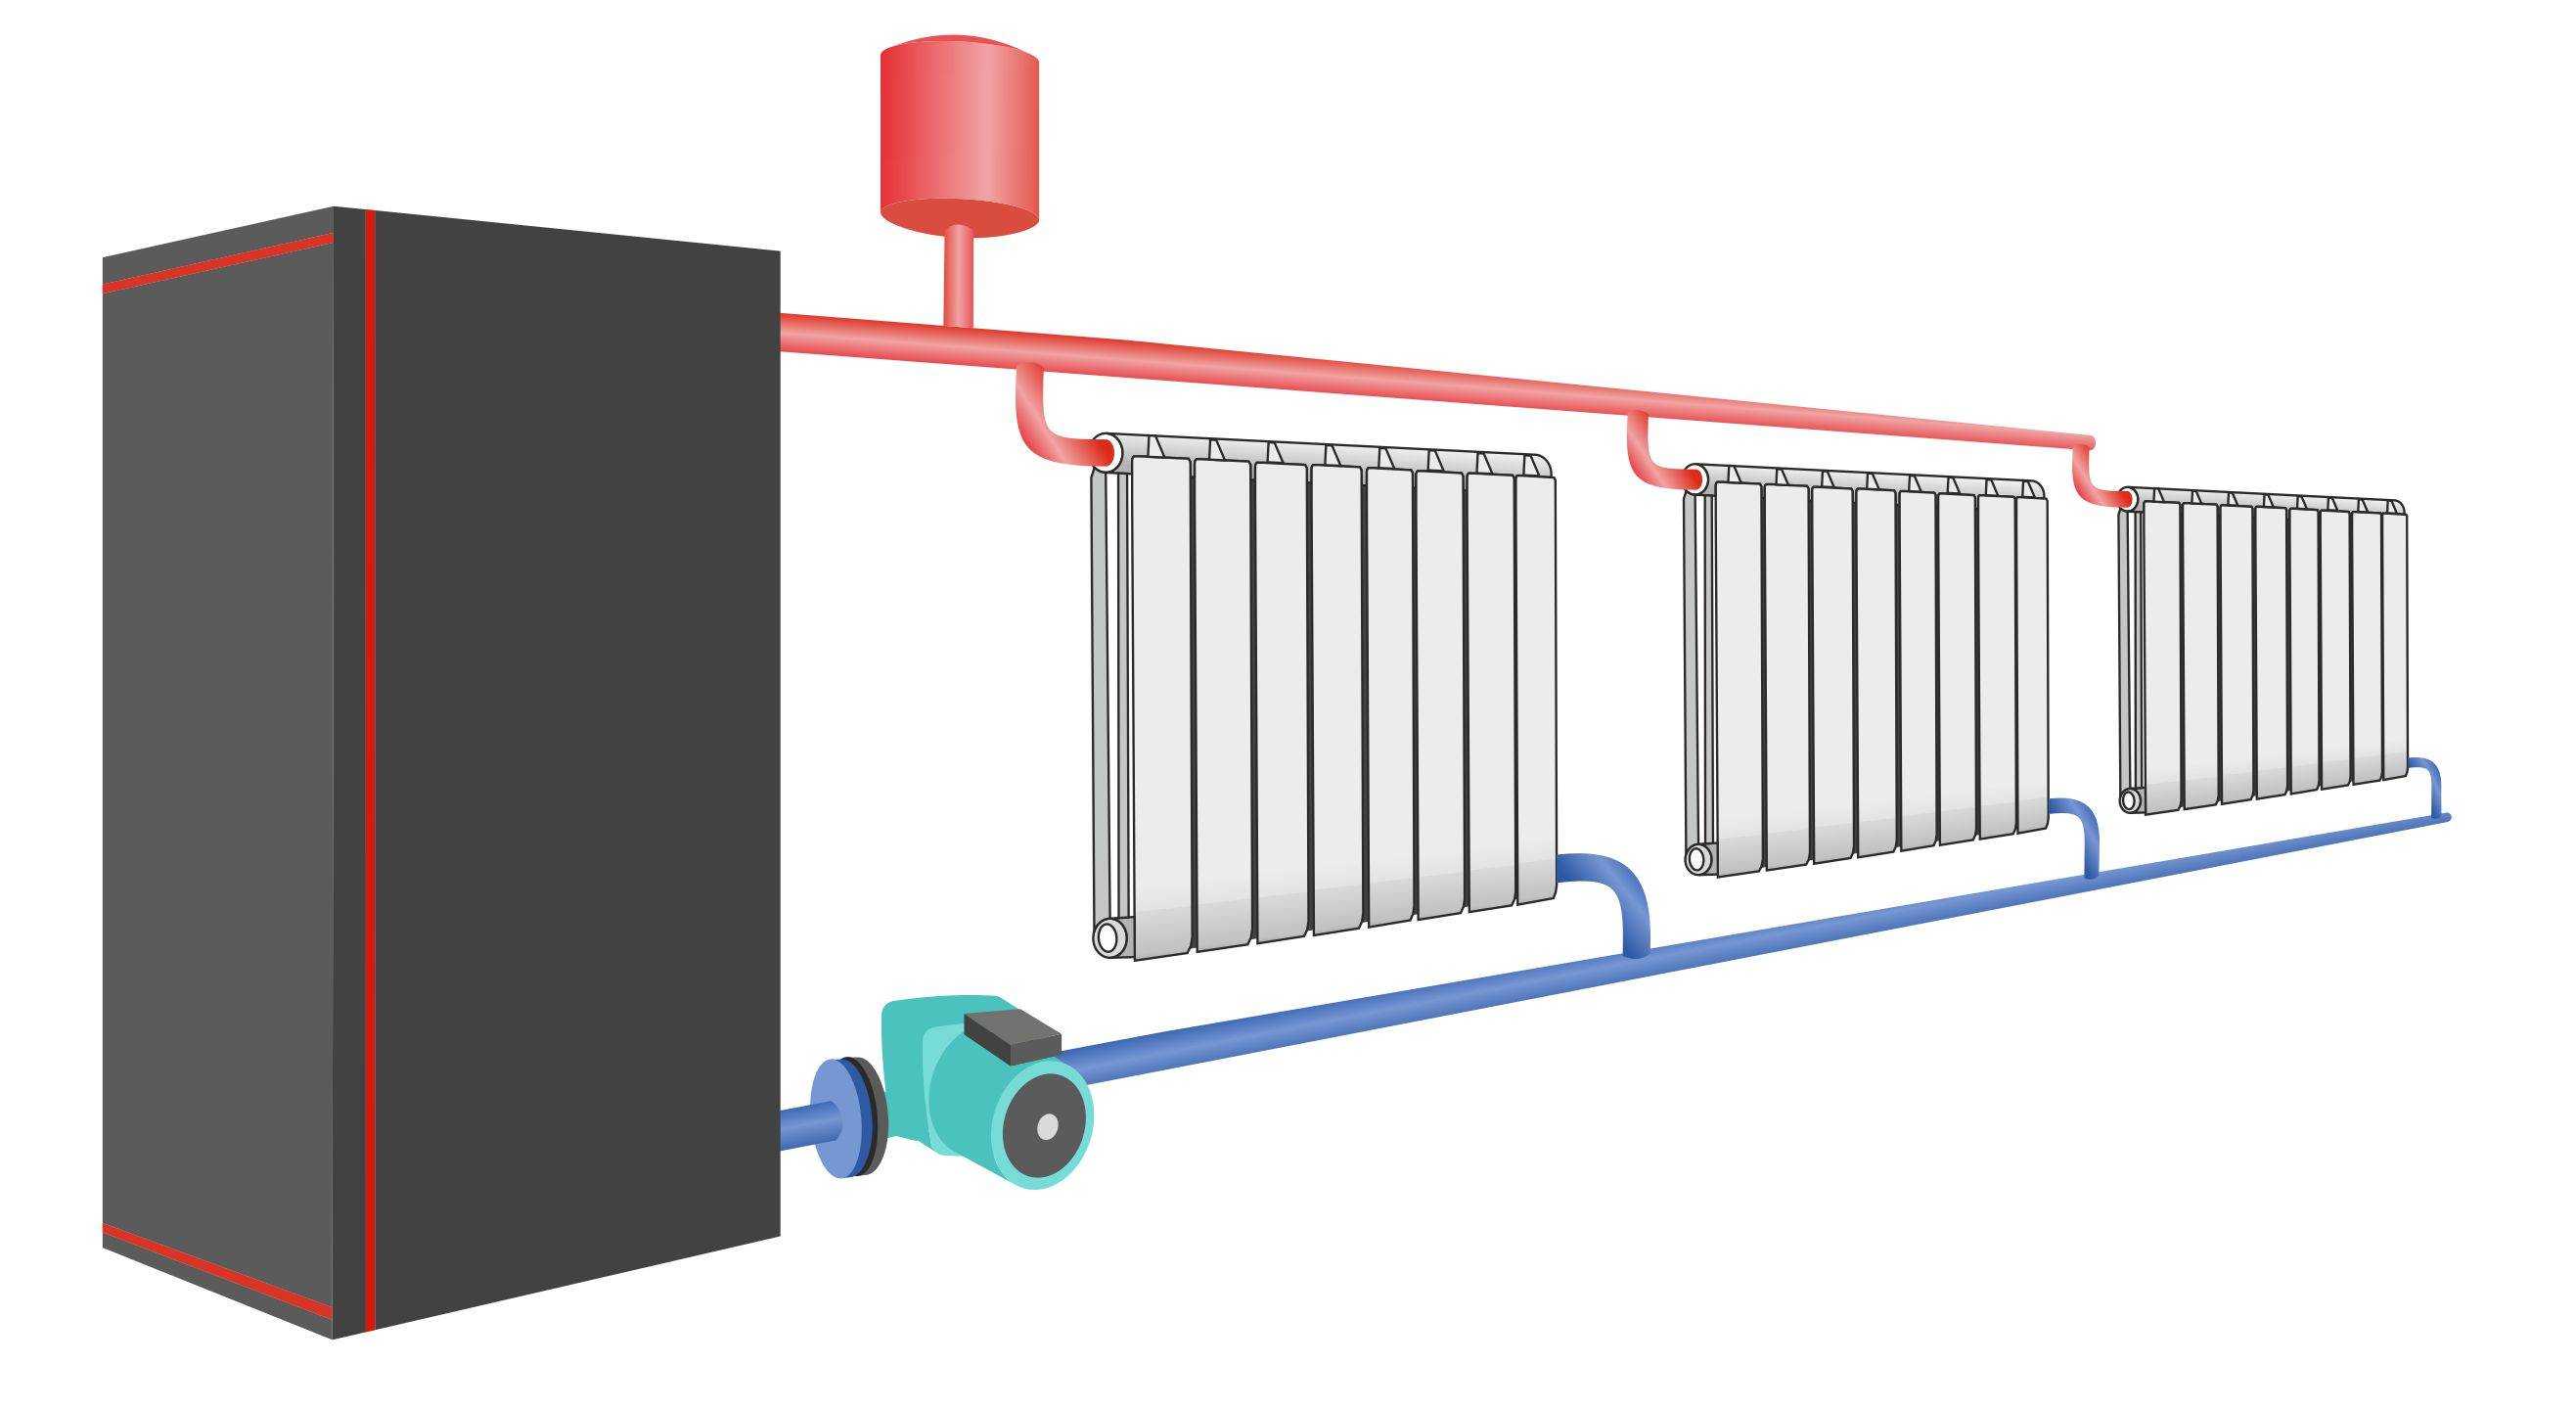 Схемы двухтрубных систем отопления для частного дома - системы отопления